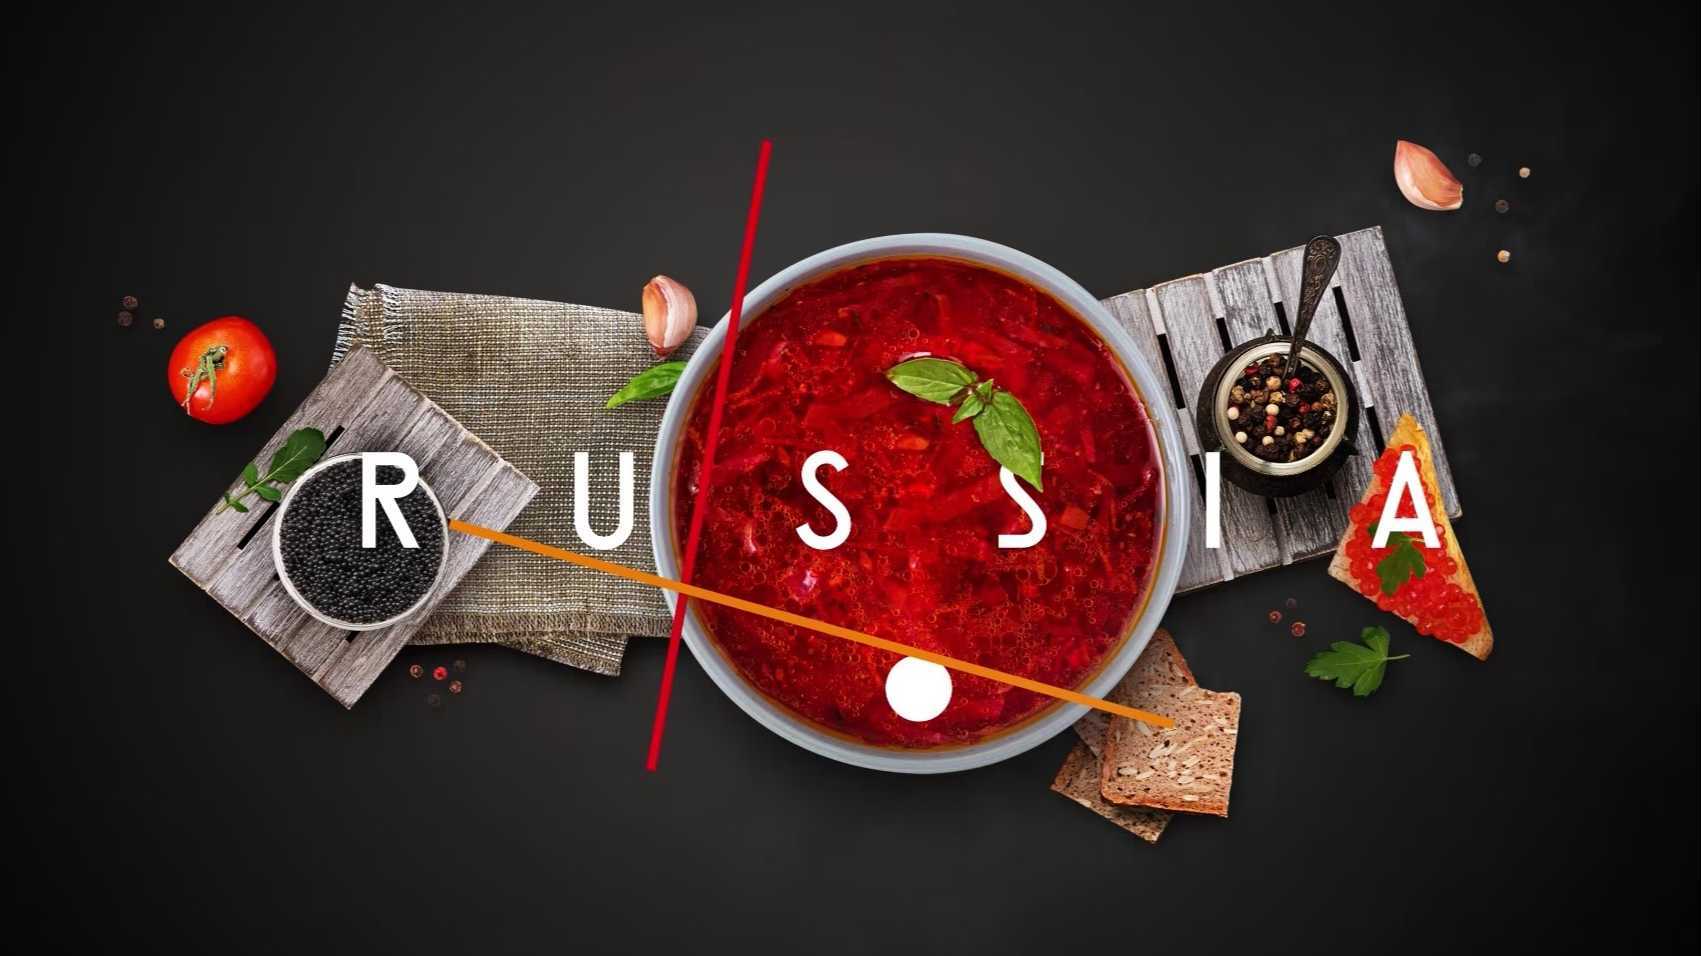 创意视觉宣传片《如何在俄罗斯旅游》